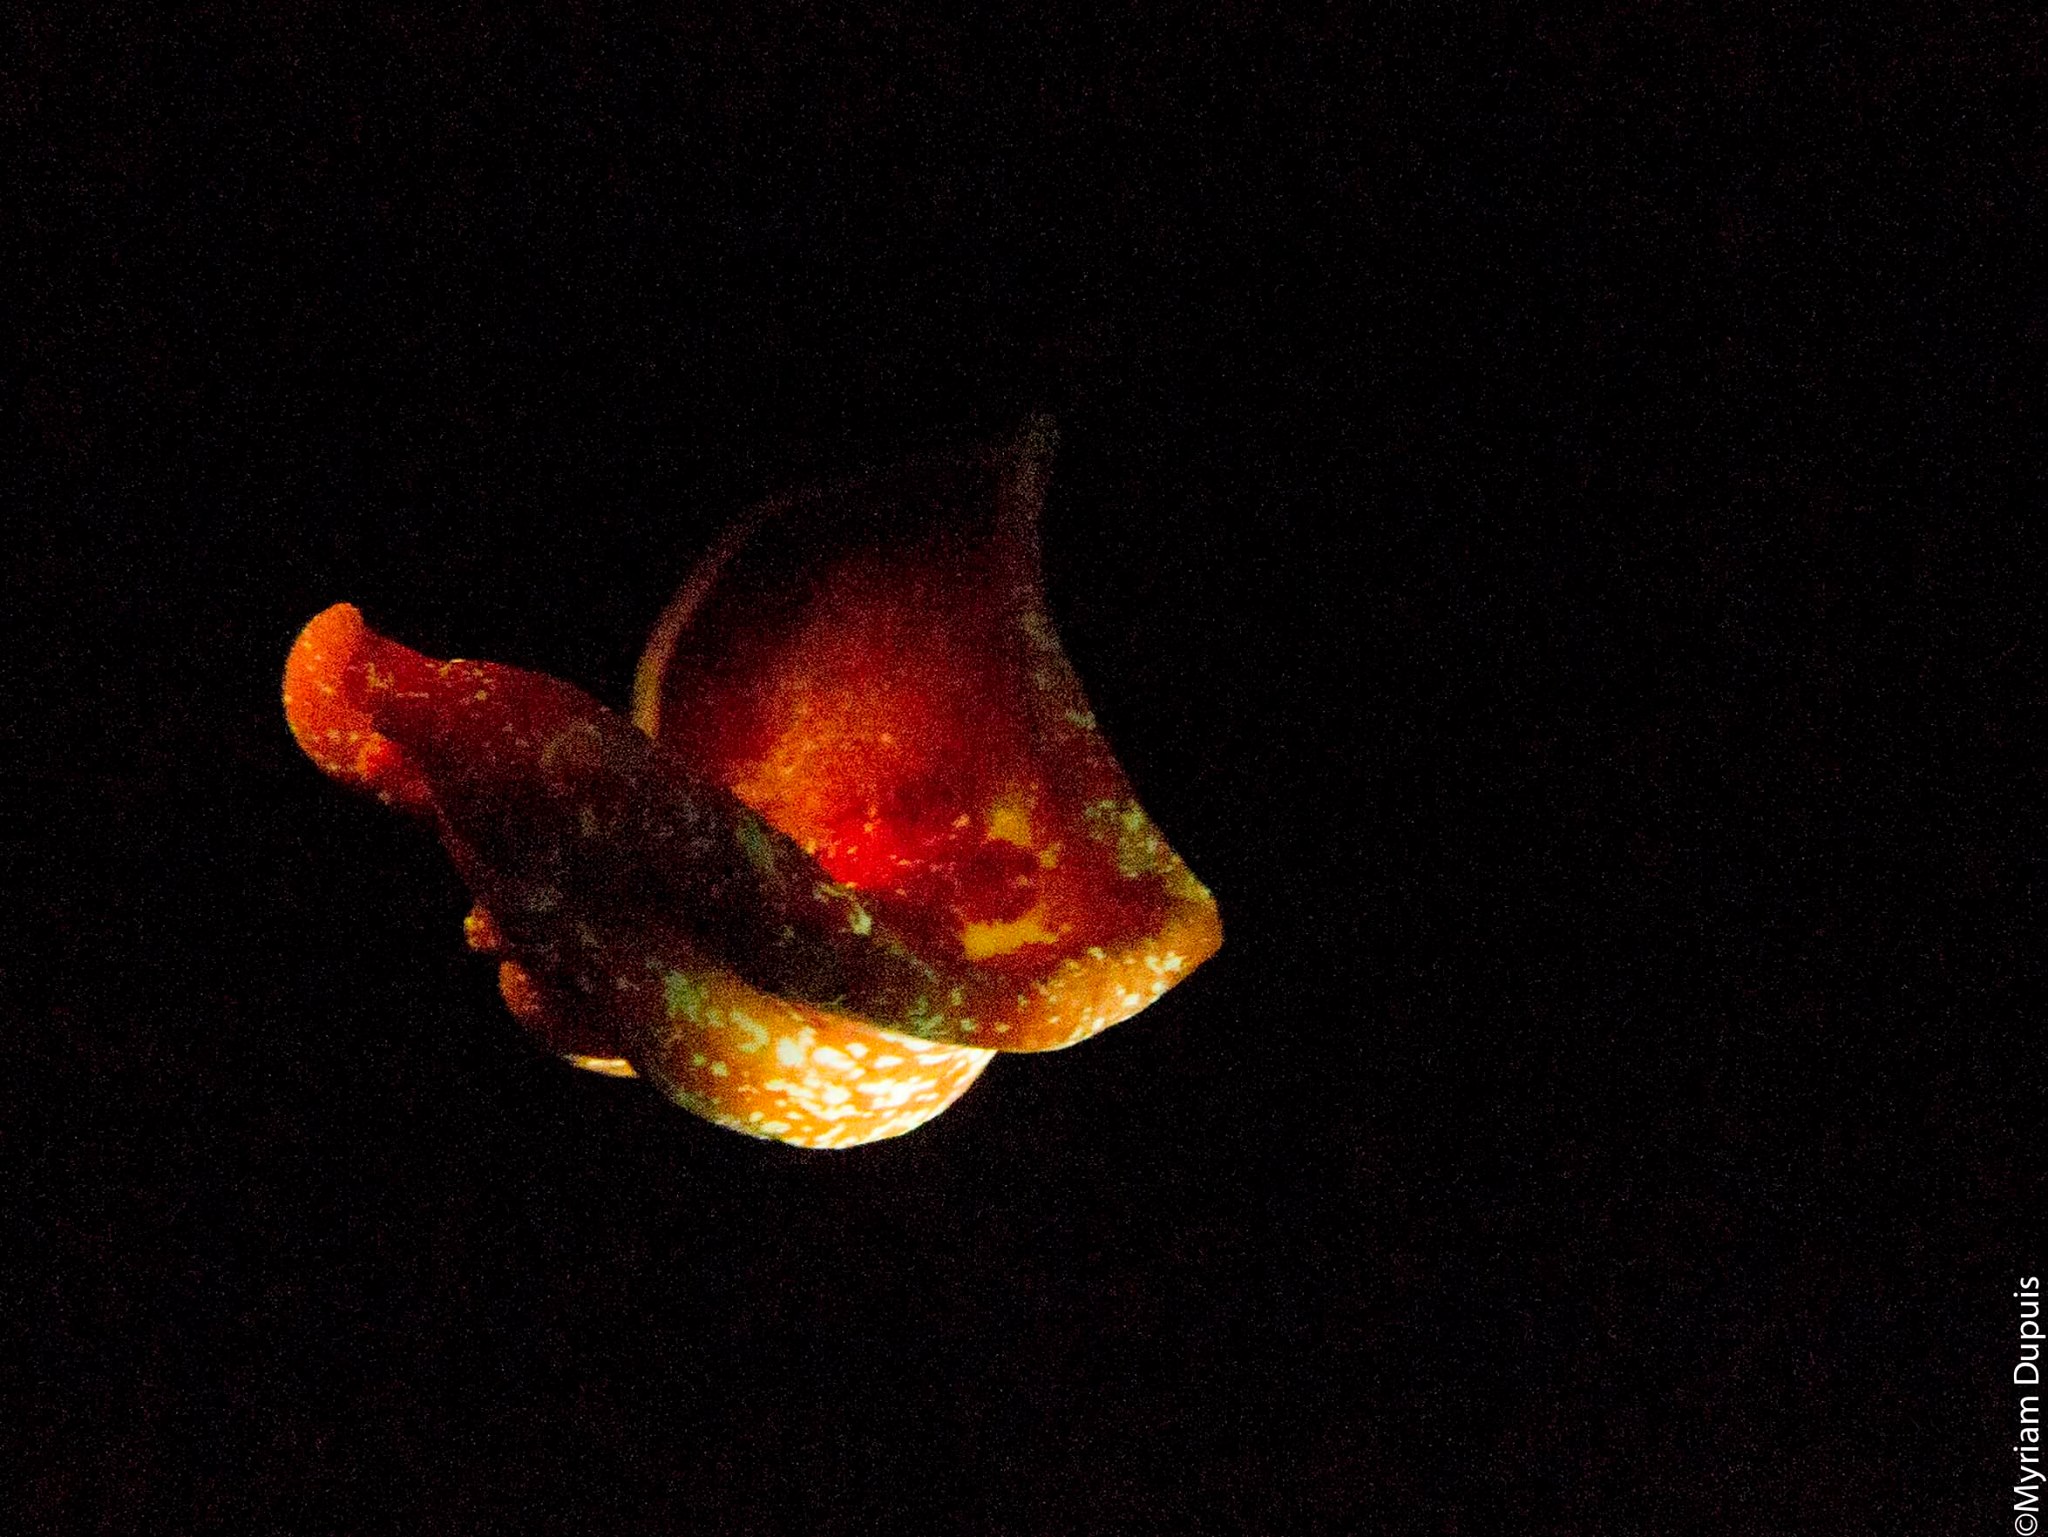 Hexabranchus sanguineus observé sur un site de plongée à l'île de La Réunion